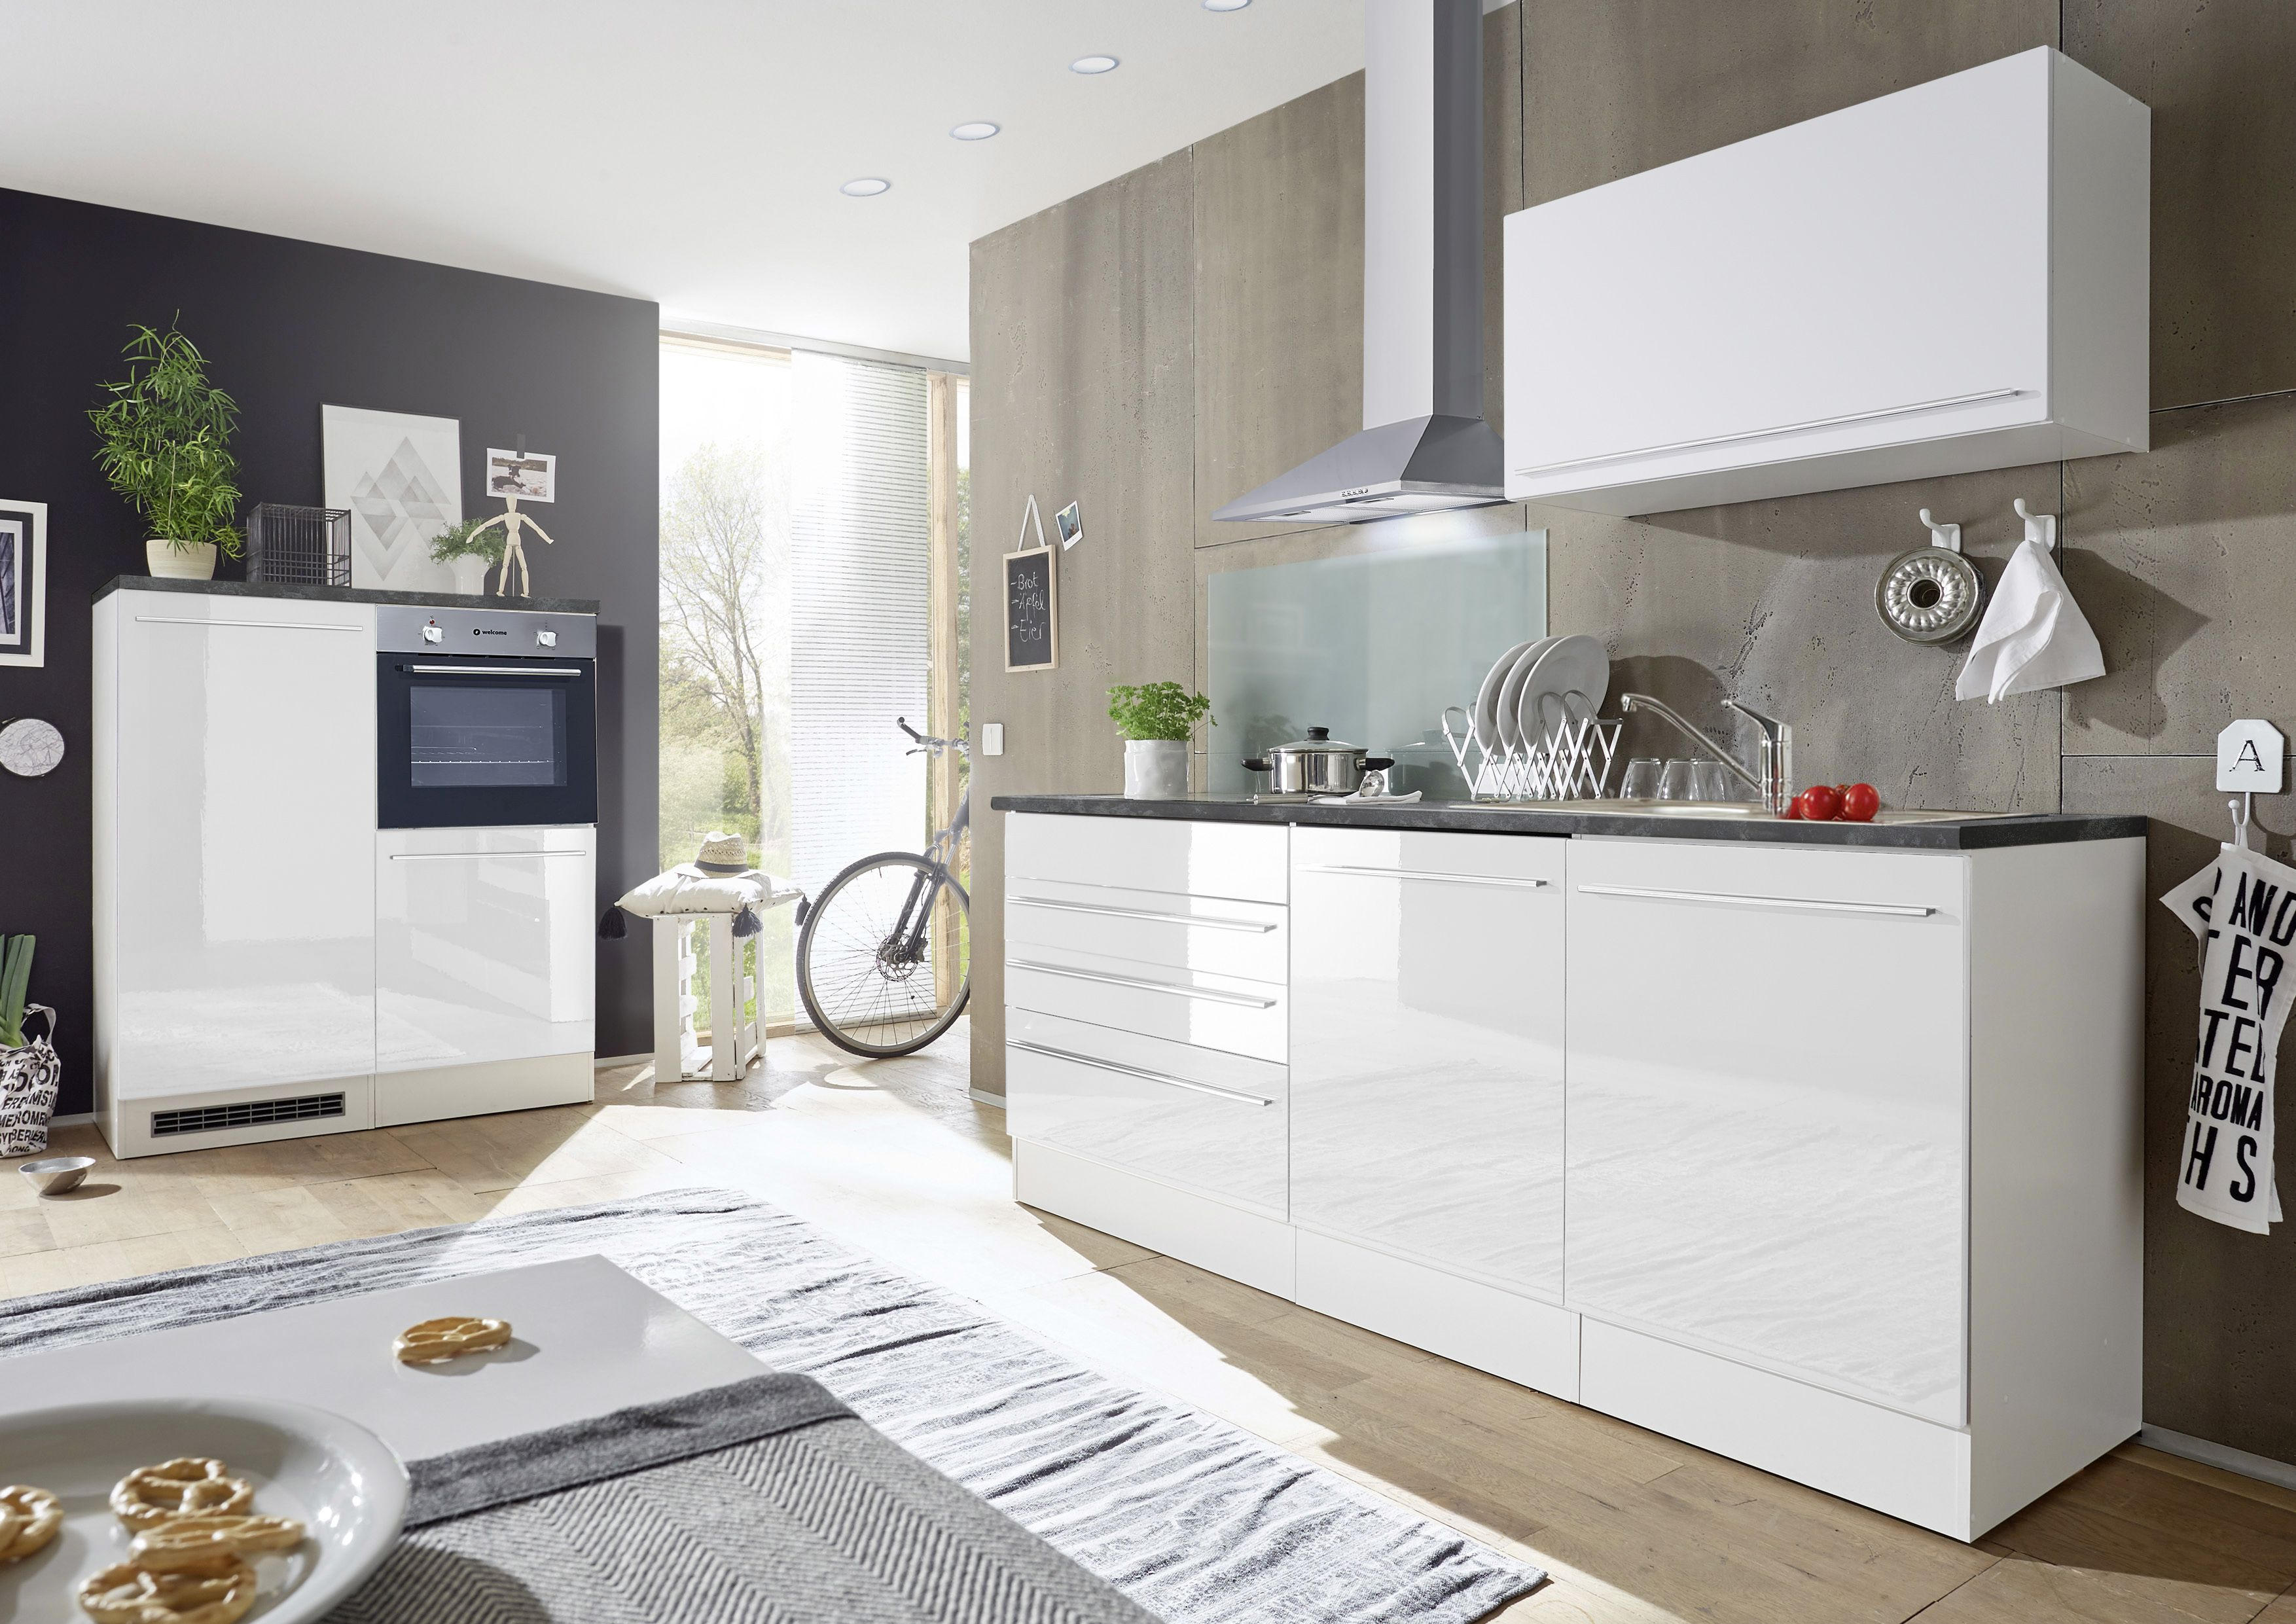 Küchenblock in Weiß  200+120 cm  Weiß E-Geräte, Spüle, Geschirrspüler  - Weiß, MODERN (200+120cm) - Carryhome